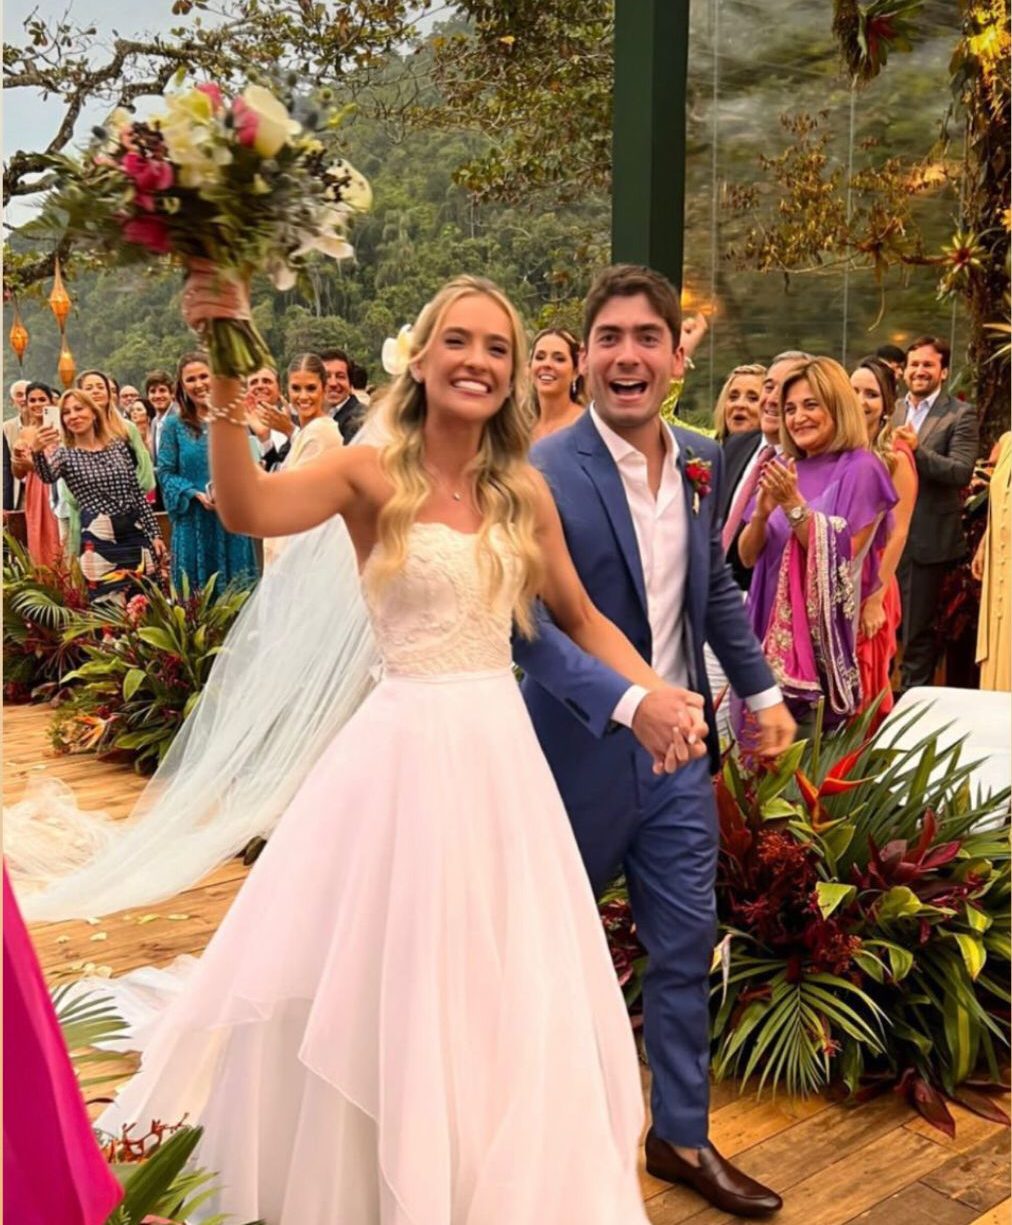 Digno de conto de fadas! Foi assim o casamento de Sofia Larocca e Cândido Pinheiro Neto no litoral de São Paulo